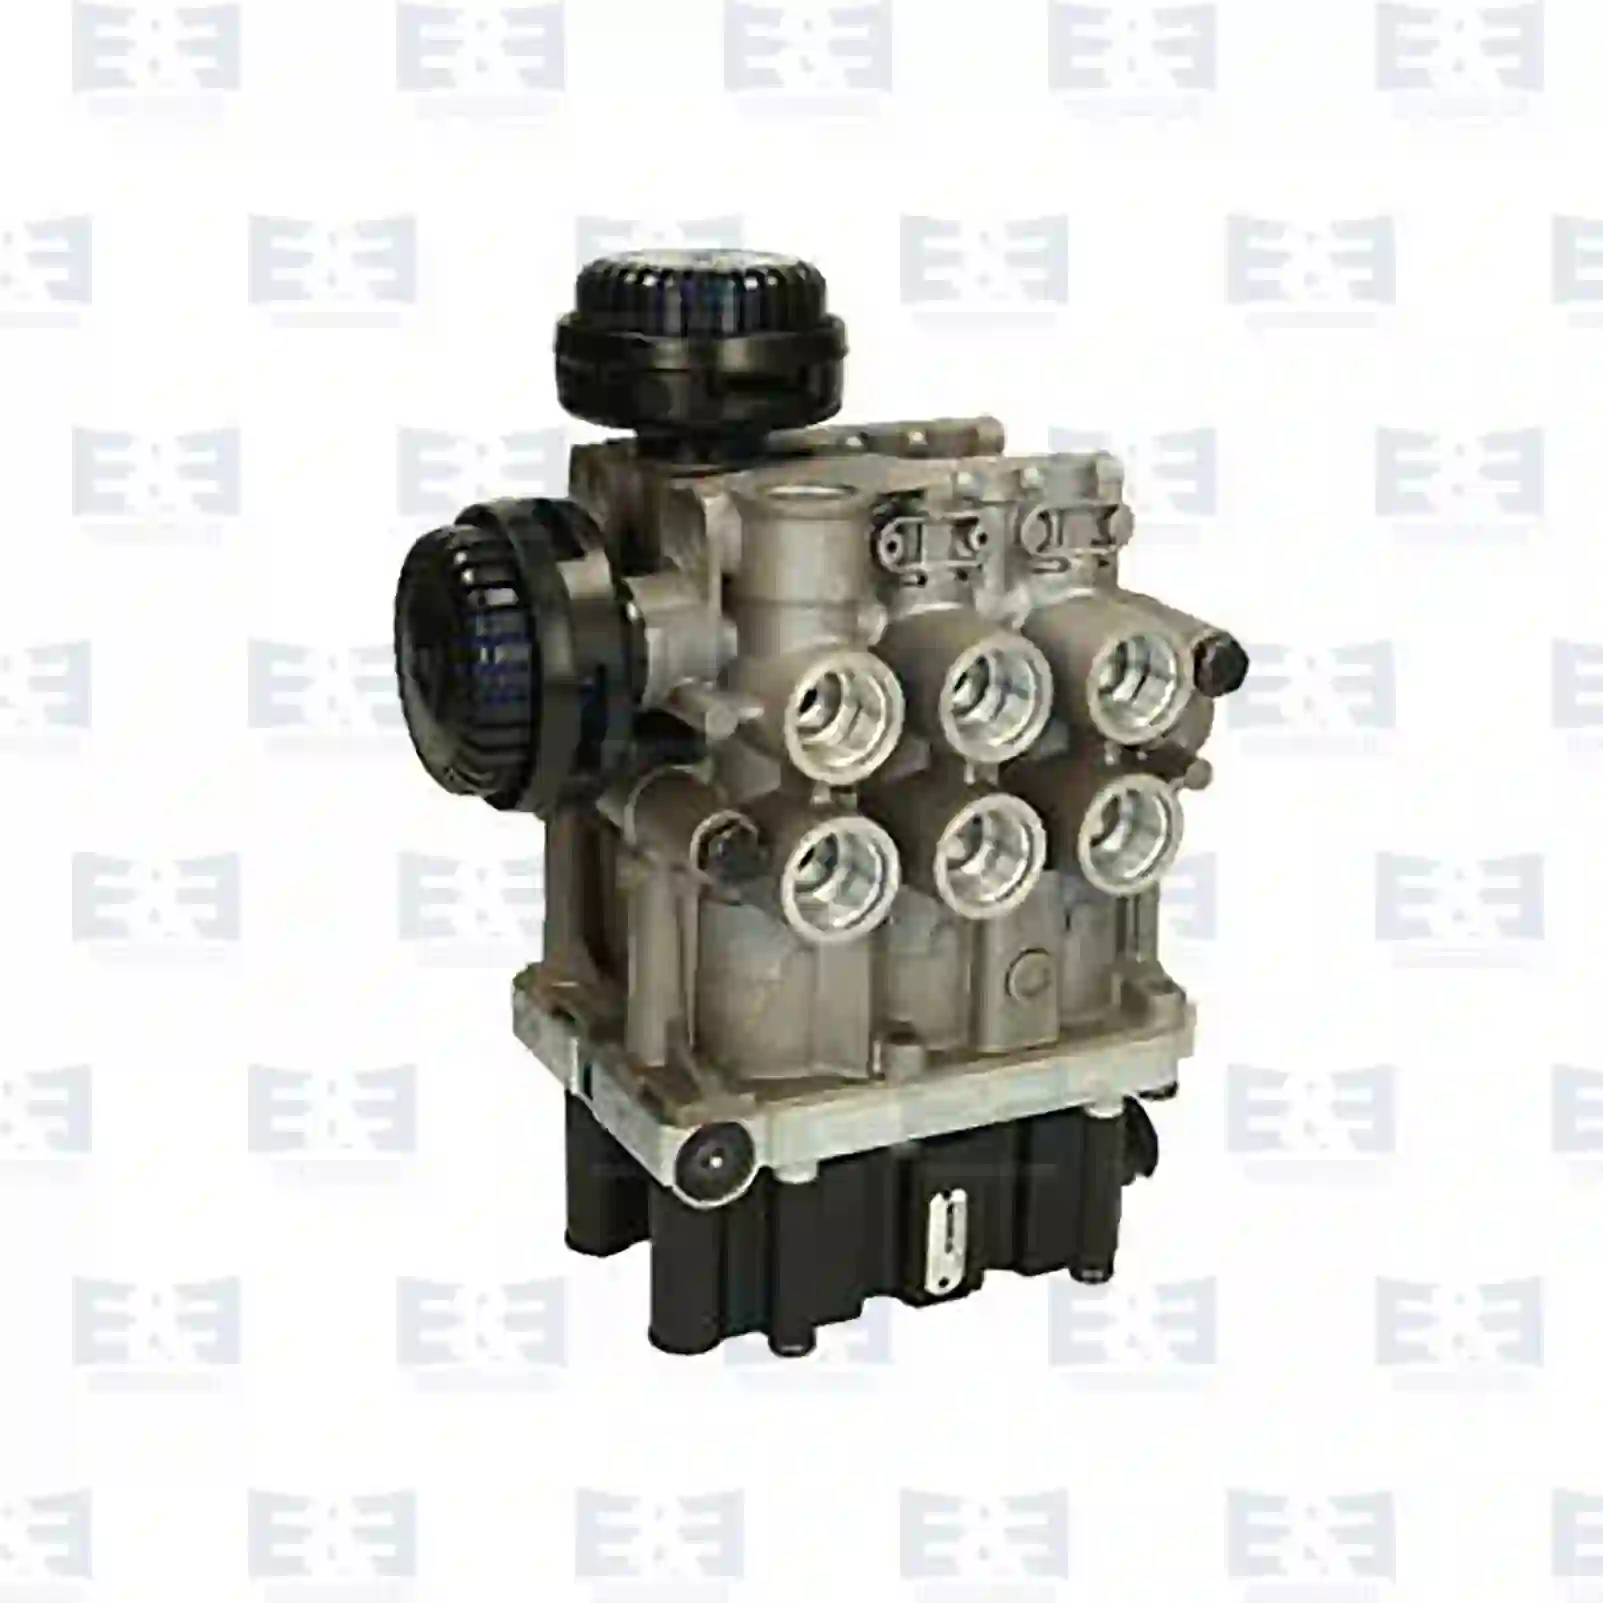  Combination valve || E&E Truck Spare Parts | Truck Spare Parts, Auotomotive Spare Parts